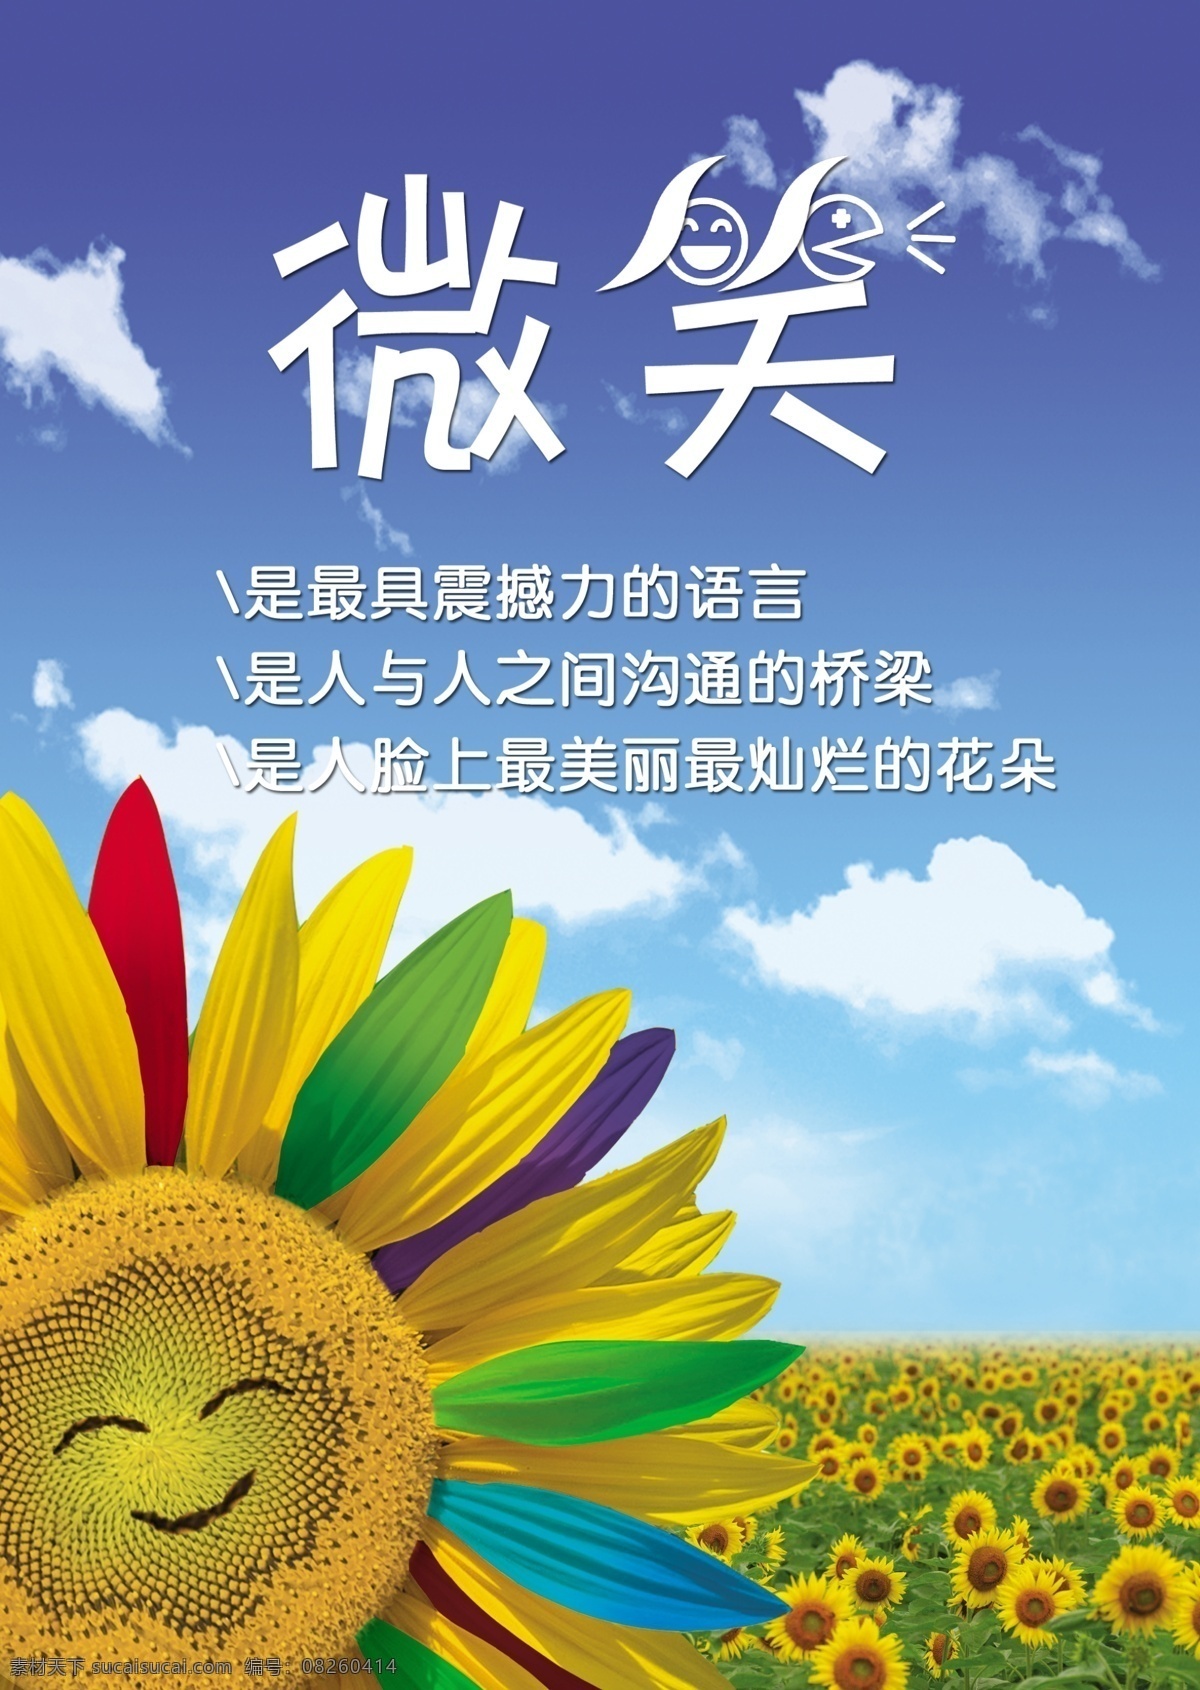 向日葵 微笑 彩色向日葵 广告 广告设计模板 蓝天 源文件 向日葵微笑 海报